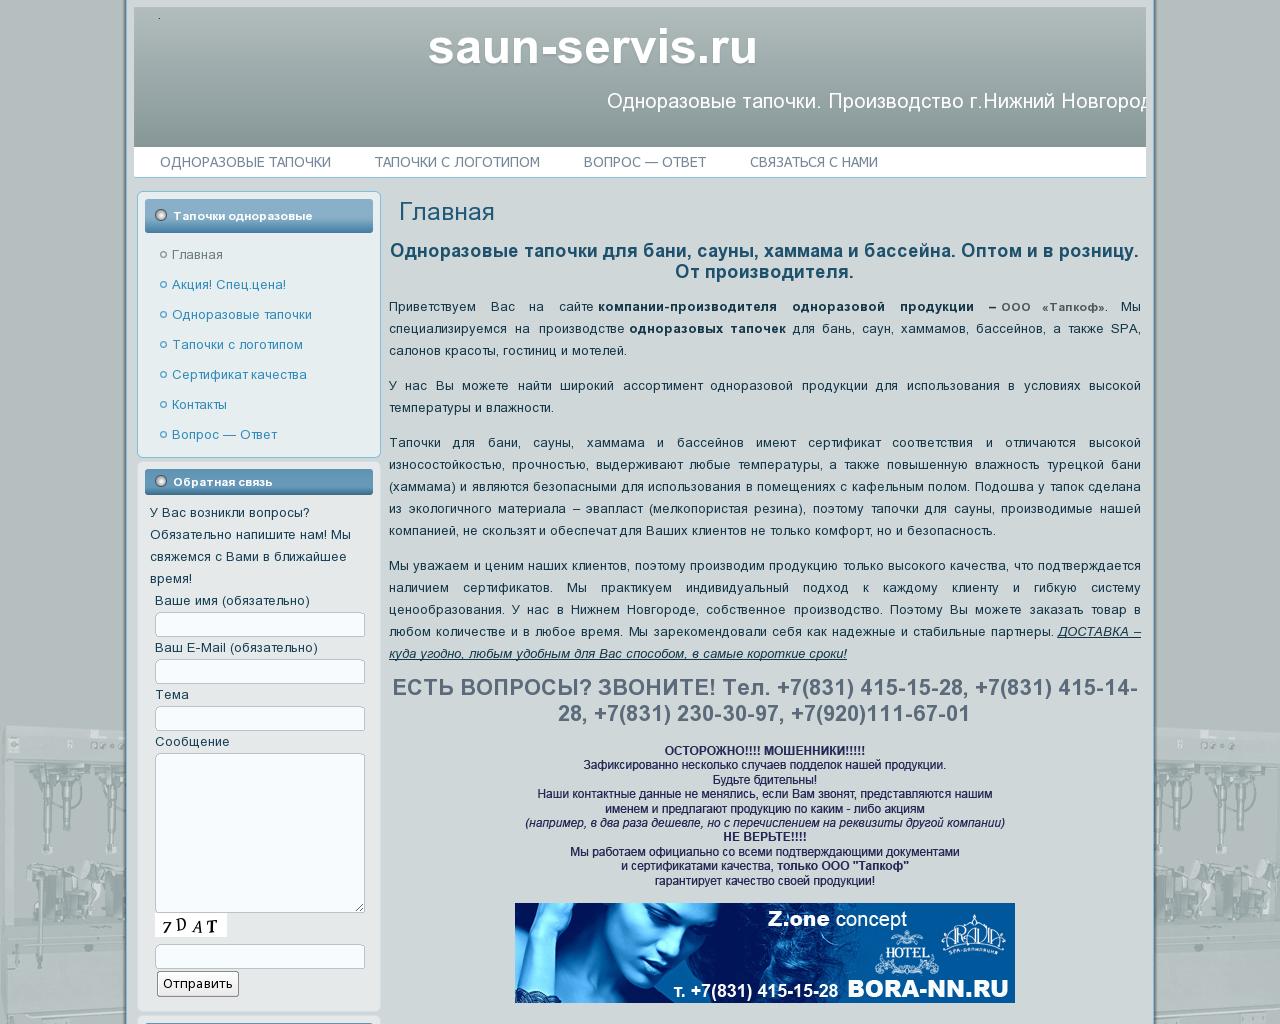 Изображение сайта saun-servis.ru в разрешении 1280x1024